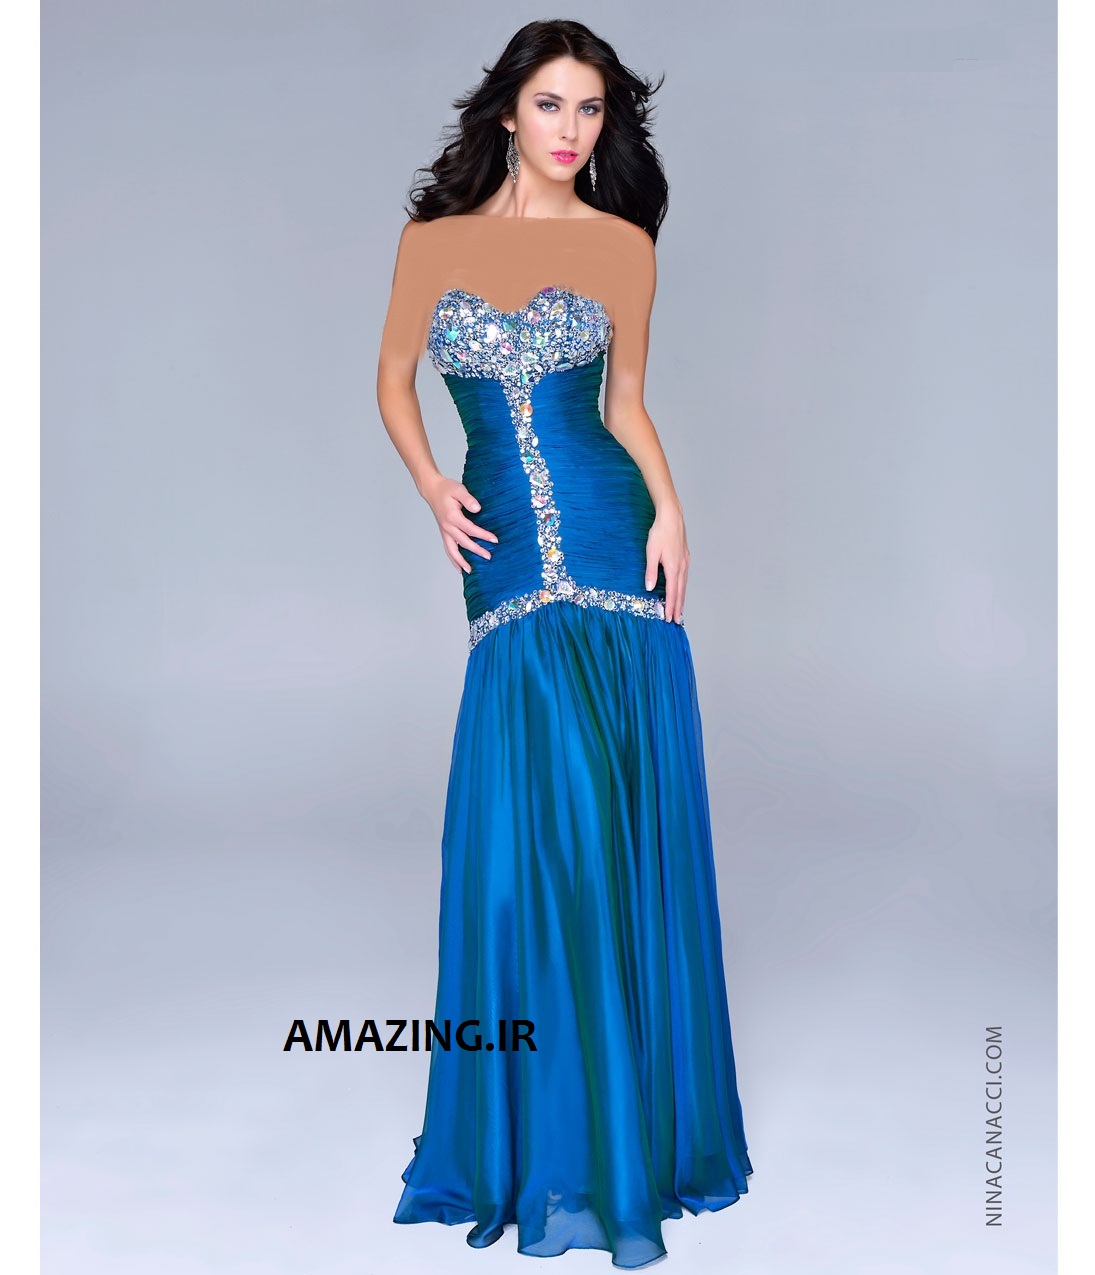 مدل لباس مجلسی 2014, مدل لباس مجلسی رنگ سال 2014 , مدل لباس مجلسی 93